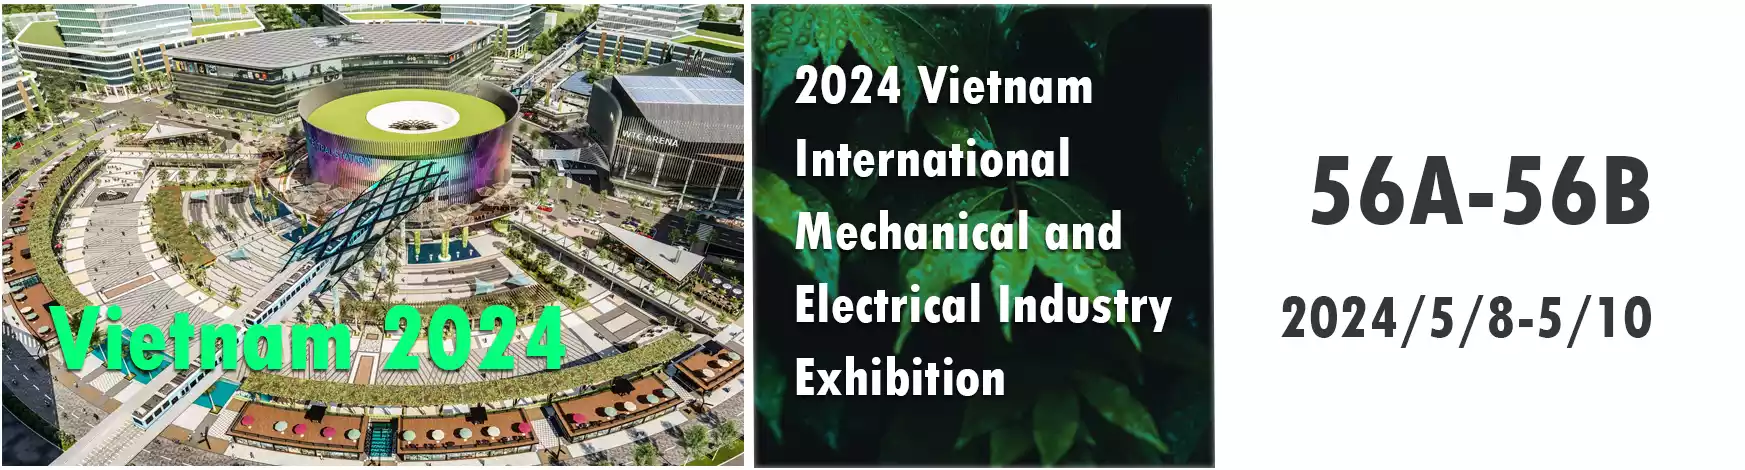 2024 Vietnam Exhibition Information